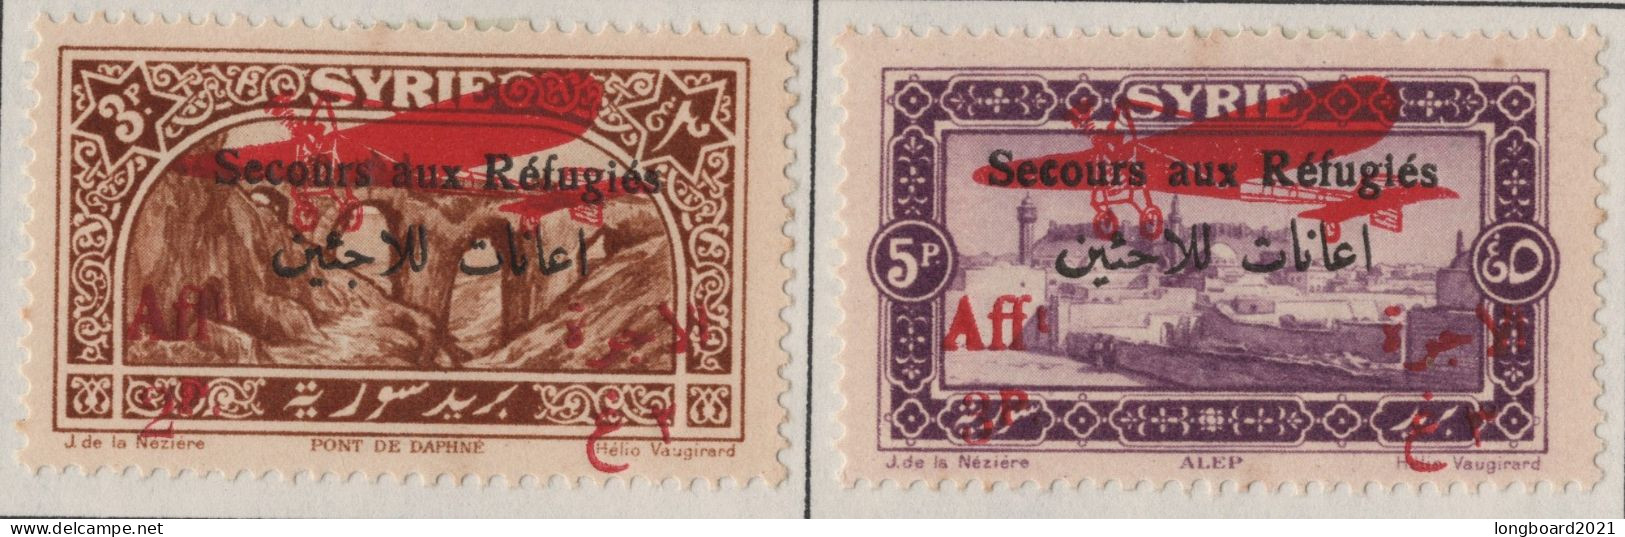 SYRIA - SET 1926 3 + 5 P REFUGEE -AIRMAIL- * Mi 296-297 - Syrien